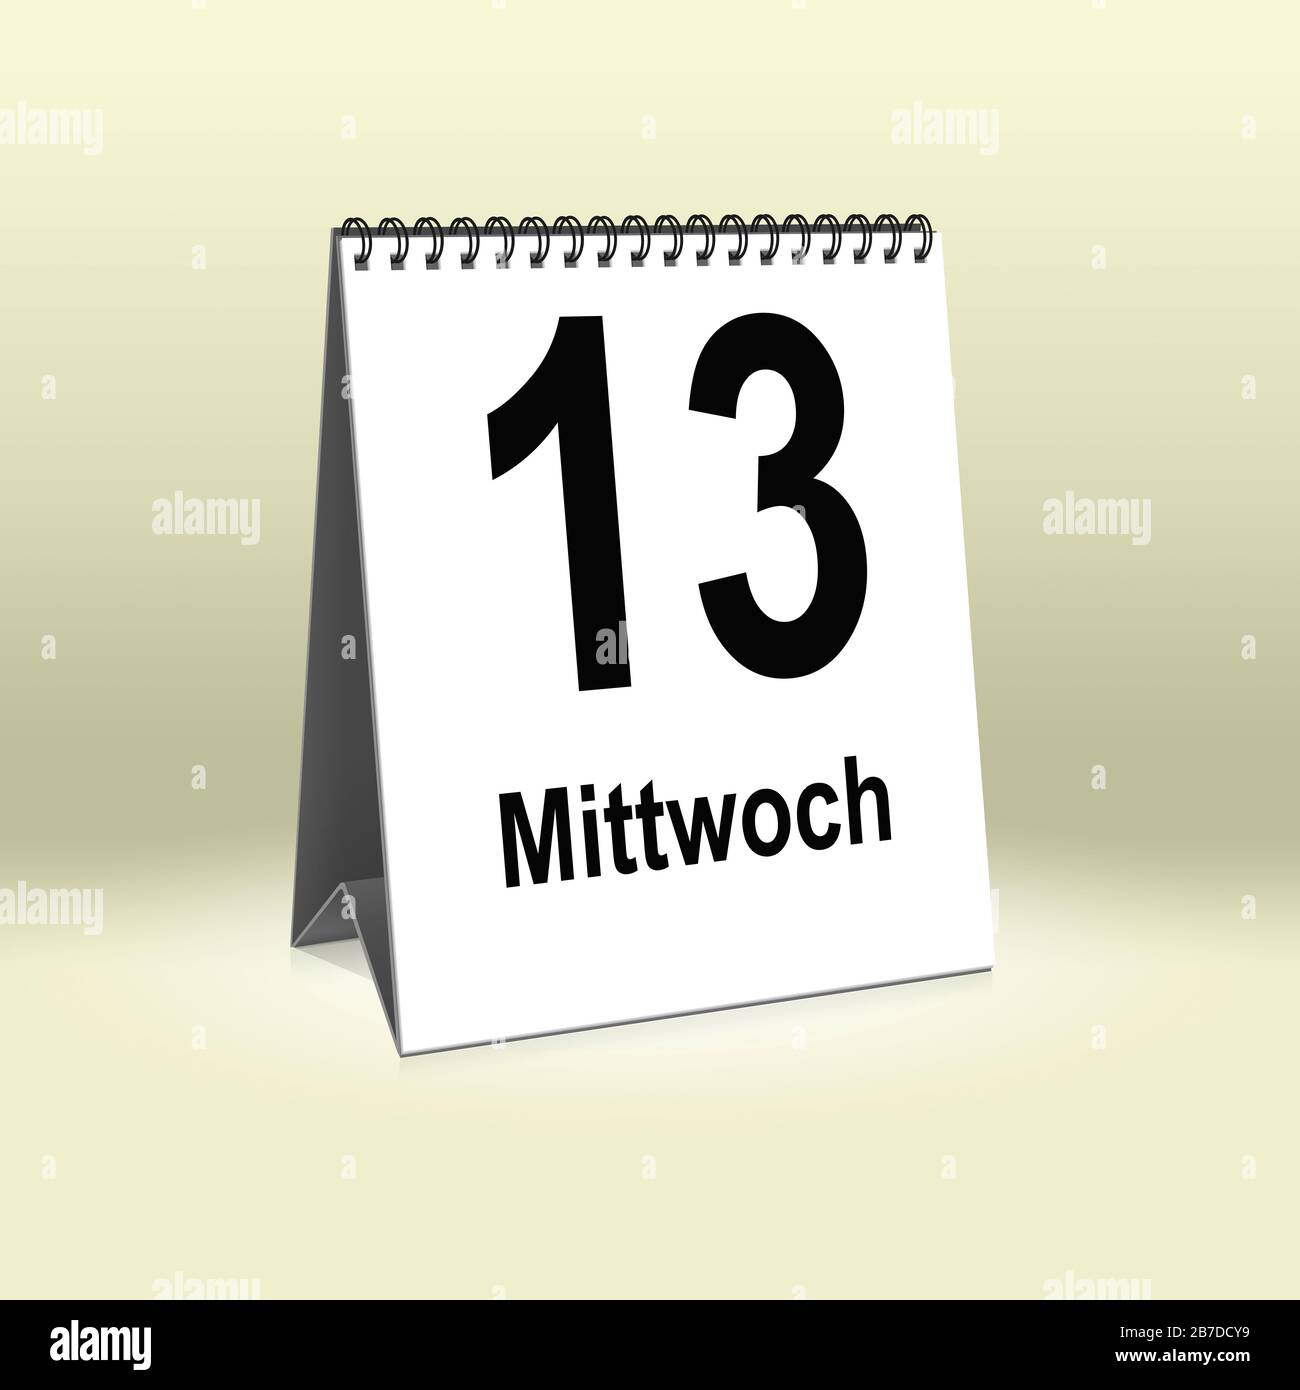 A calendar in German language shows Wednesday 13th | Ein Kalender für den Schreibtisch zeigt Mittwoch 13. Stock Photo